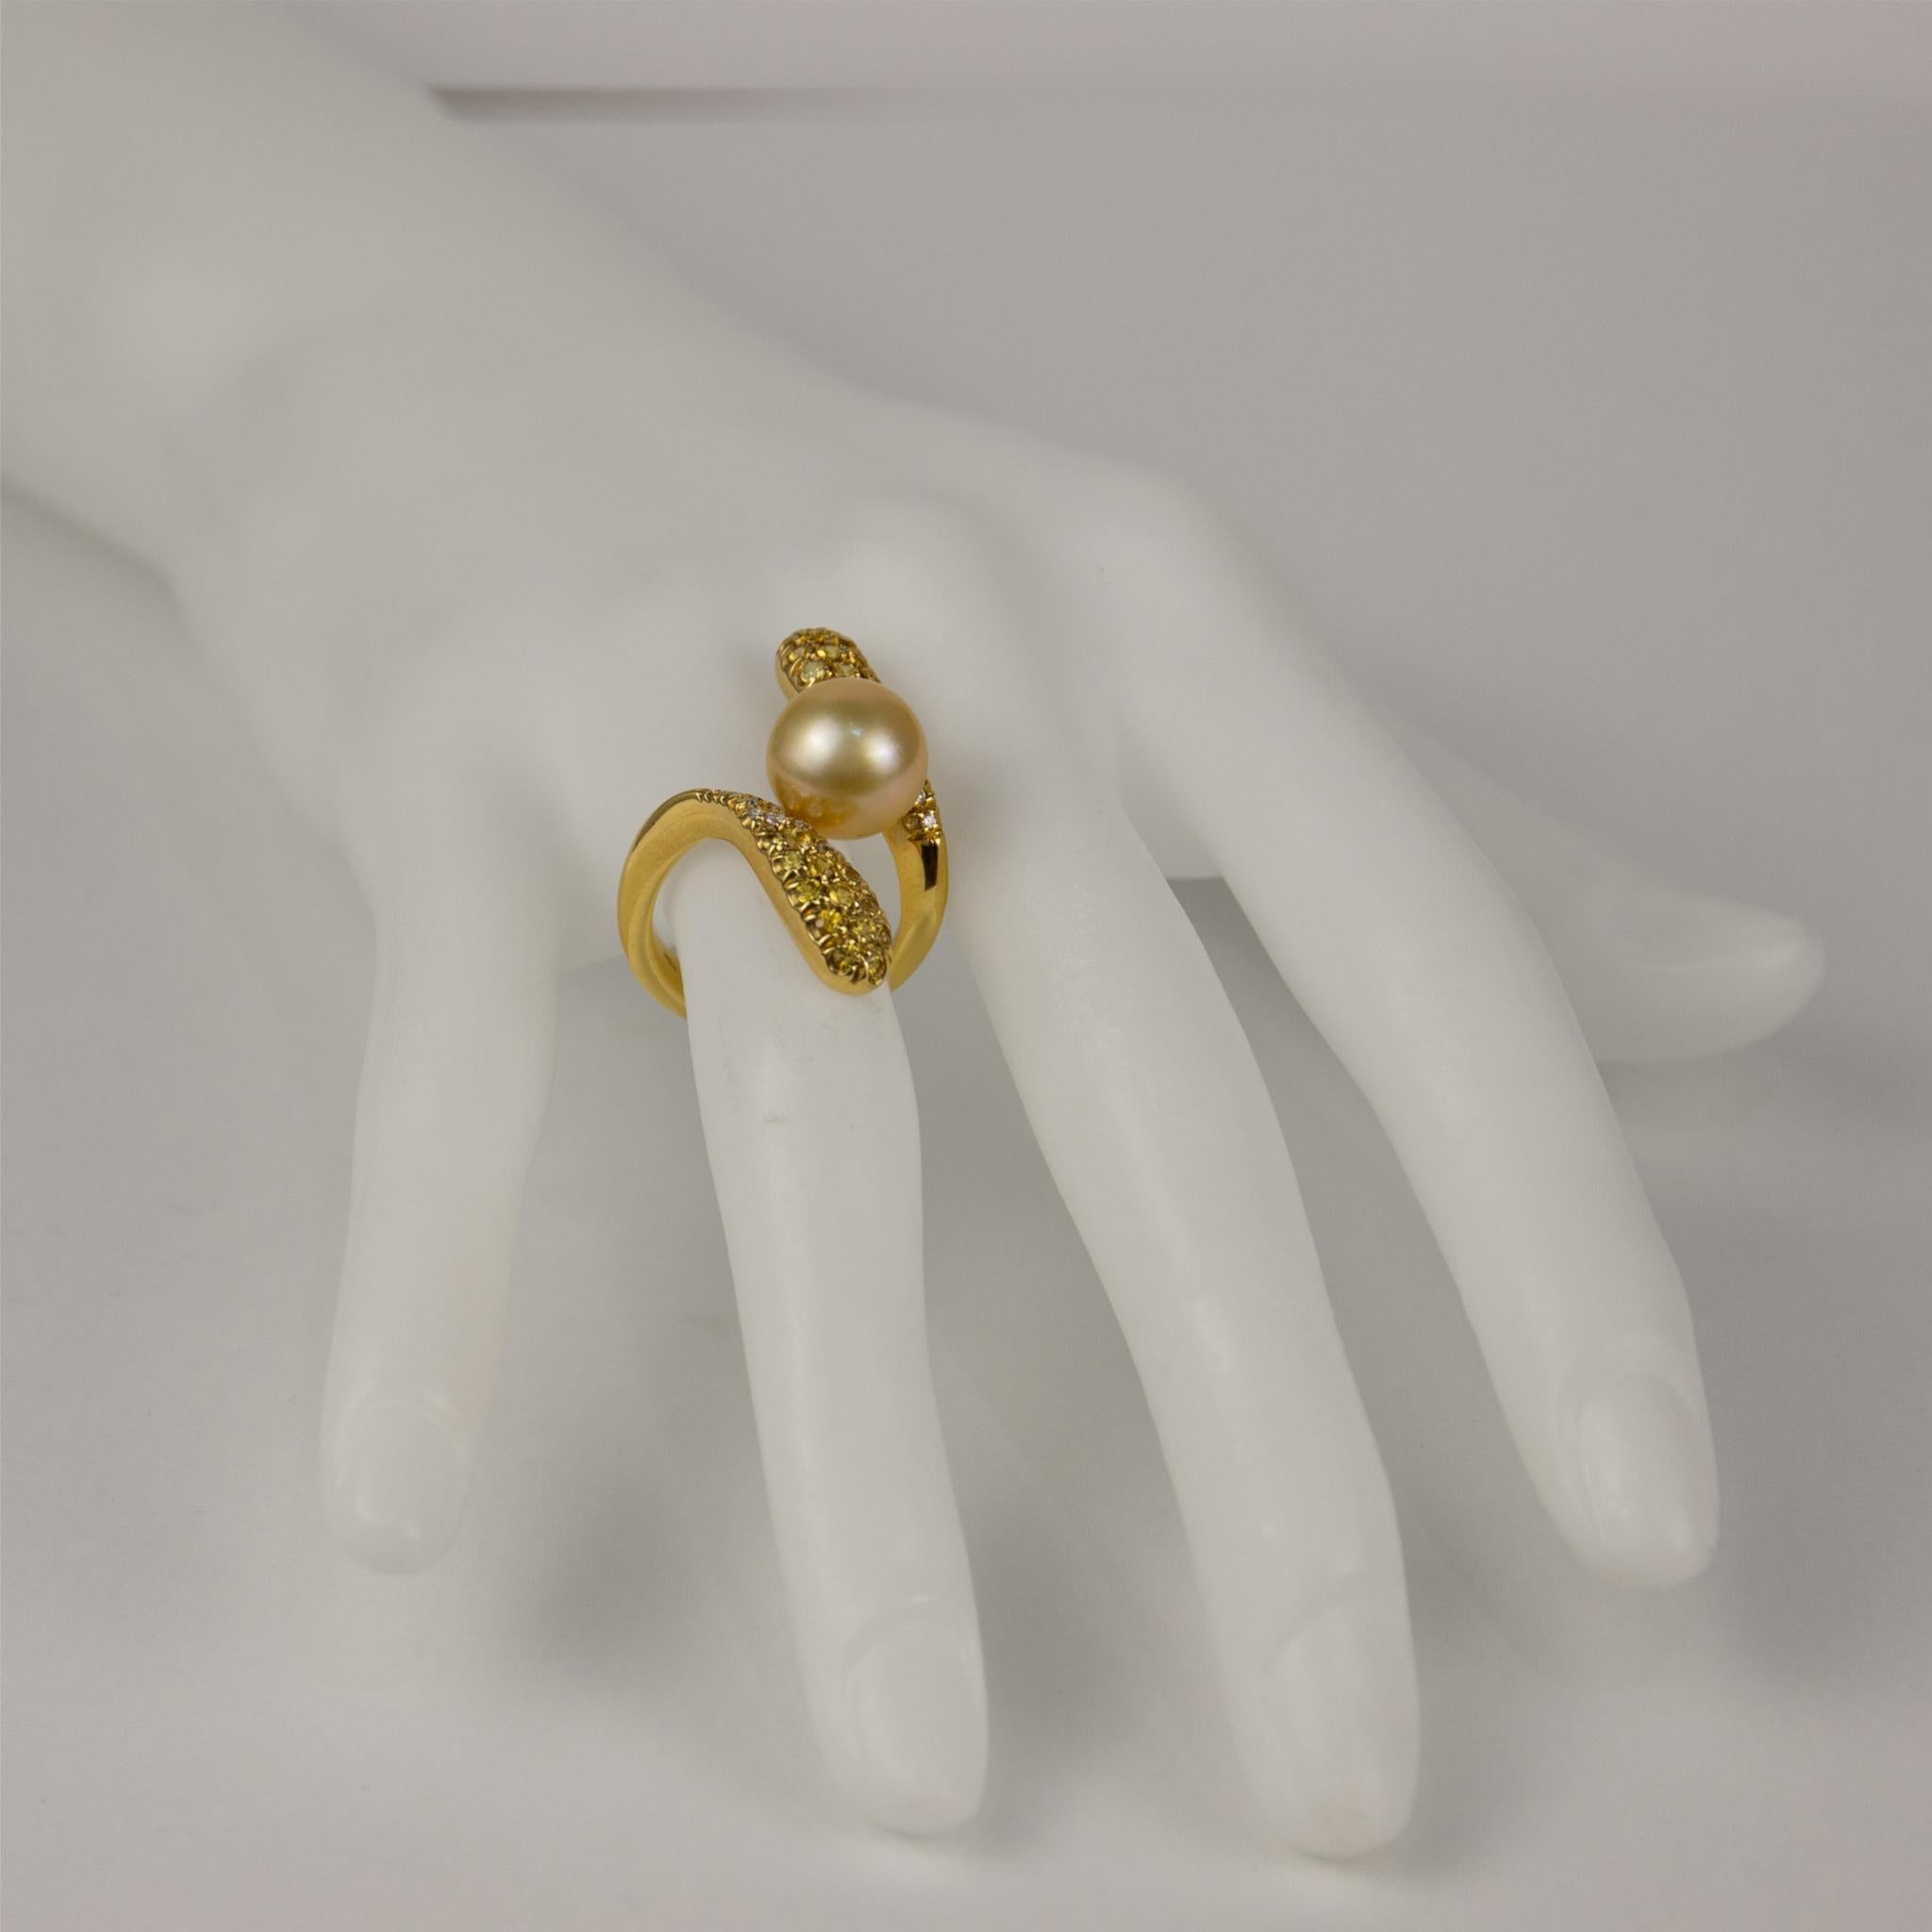 Modern Stefan Hafner 18k Yellow Gold Diamond & Pearl Ring For Sale